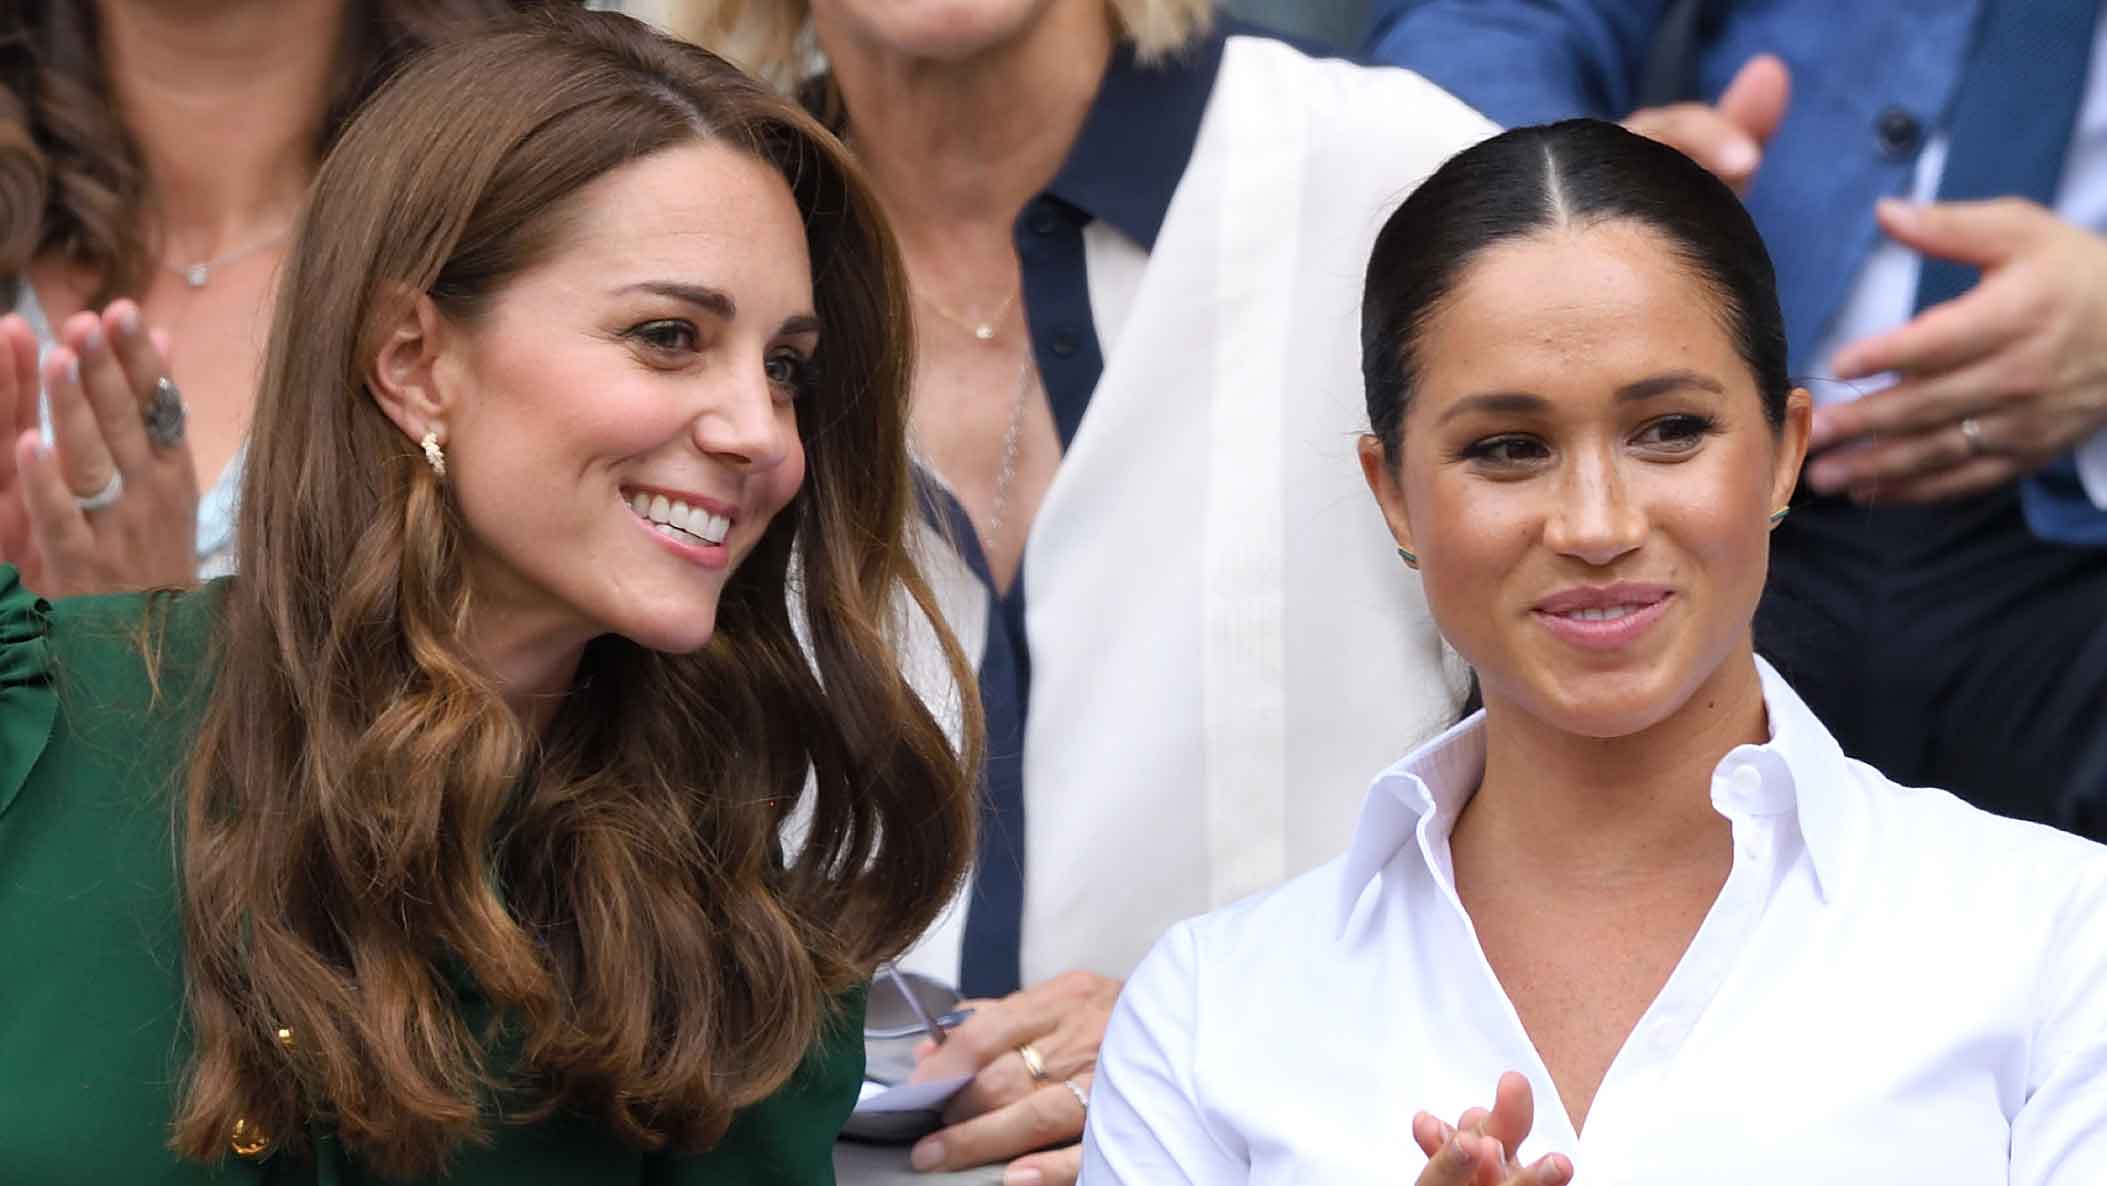 Wimbledon's chicest pair: Duchess Kate and Duchess Meghan's winning looks 